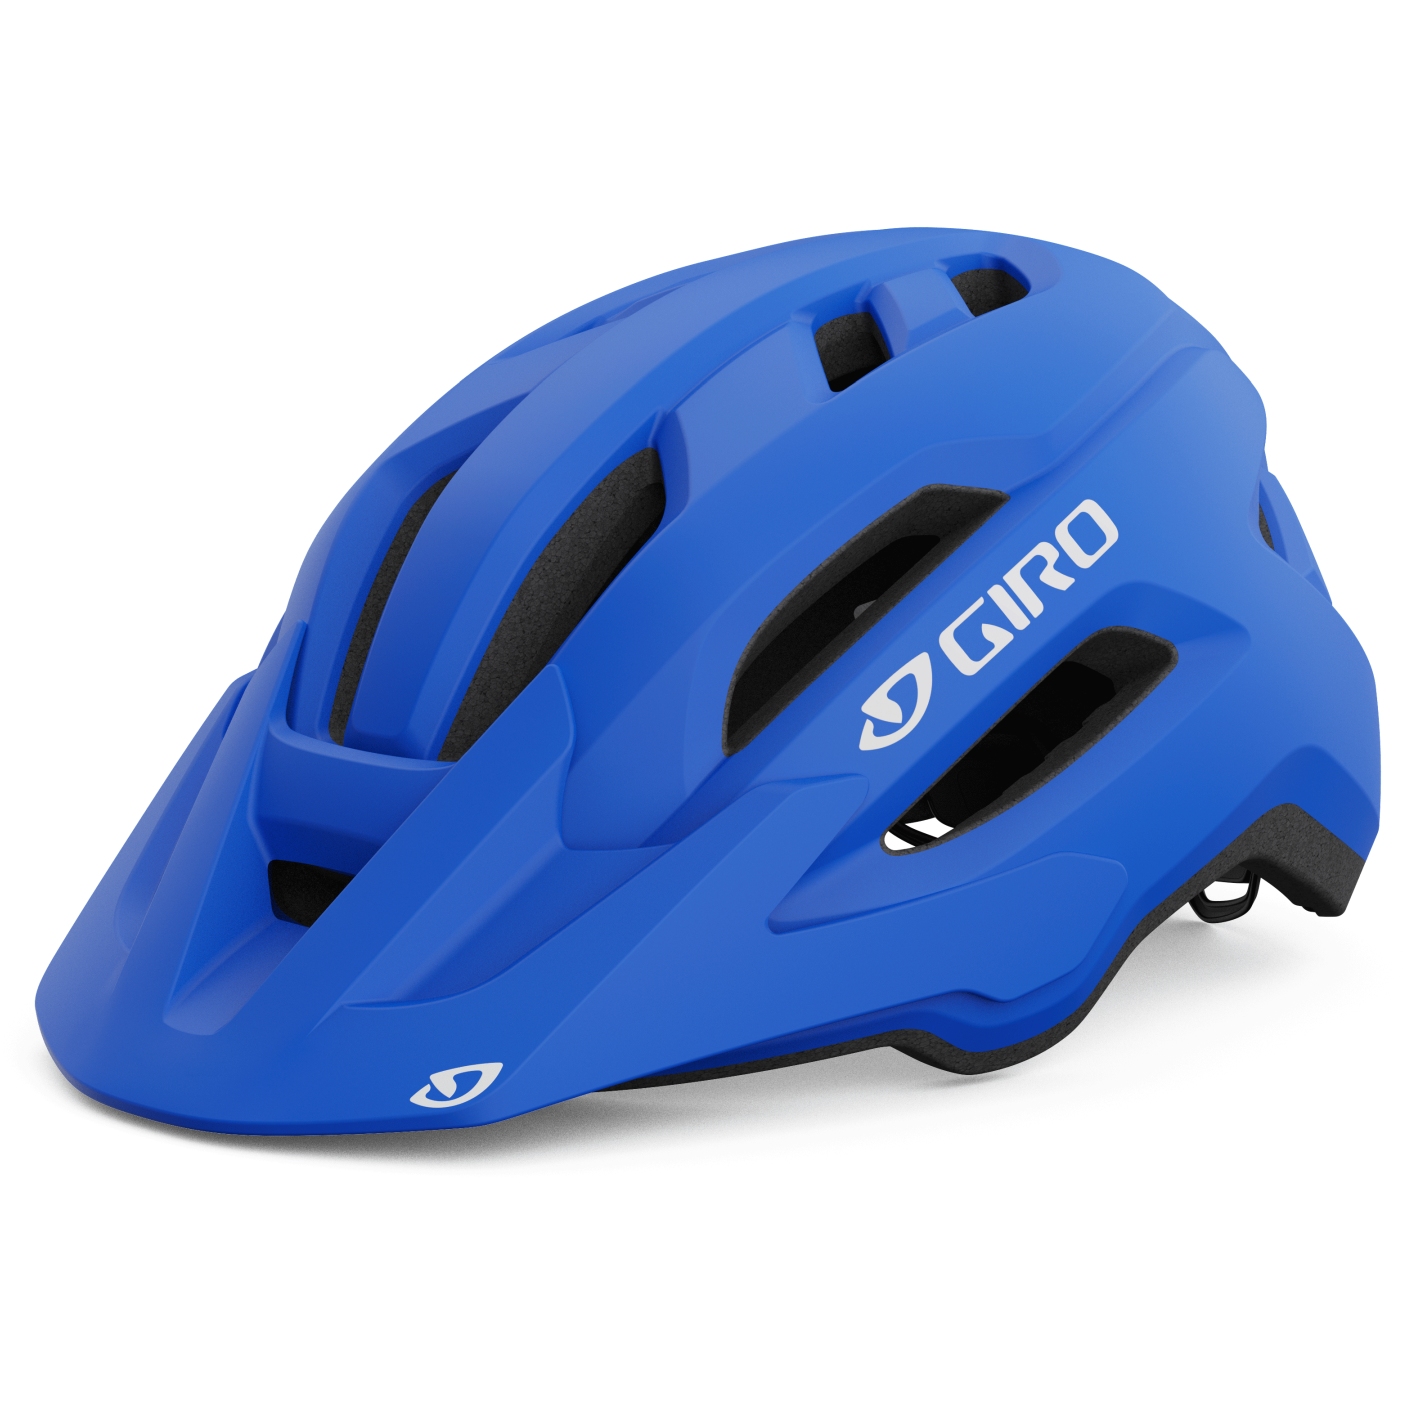 Produktbild von Giro Fixture II Helm - matte trim blue